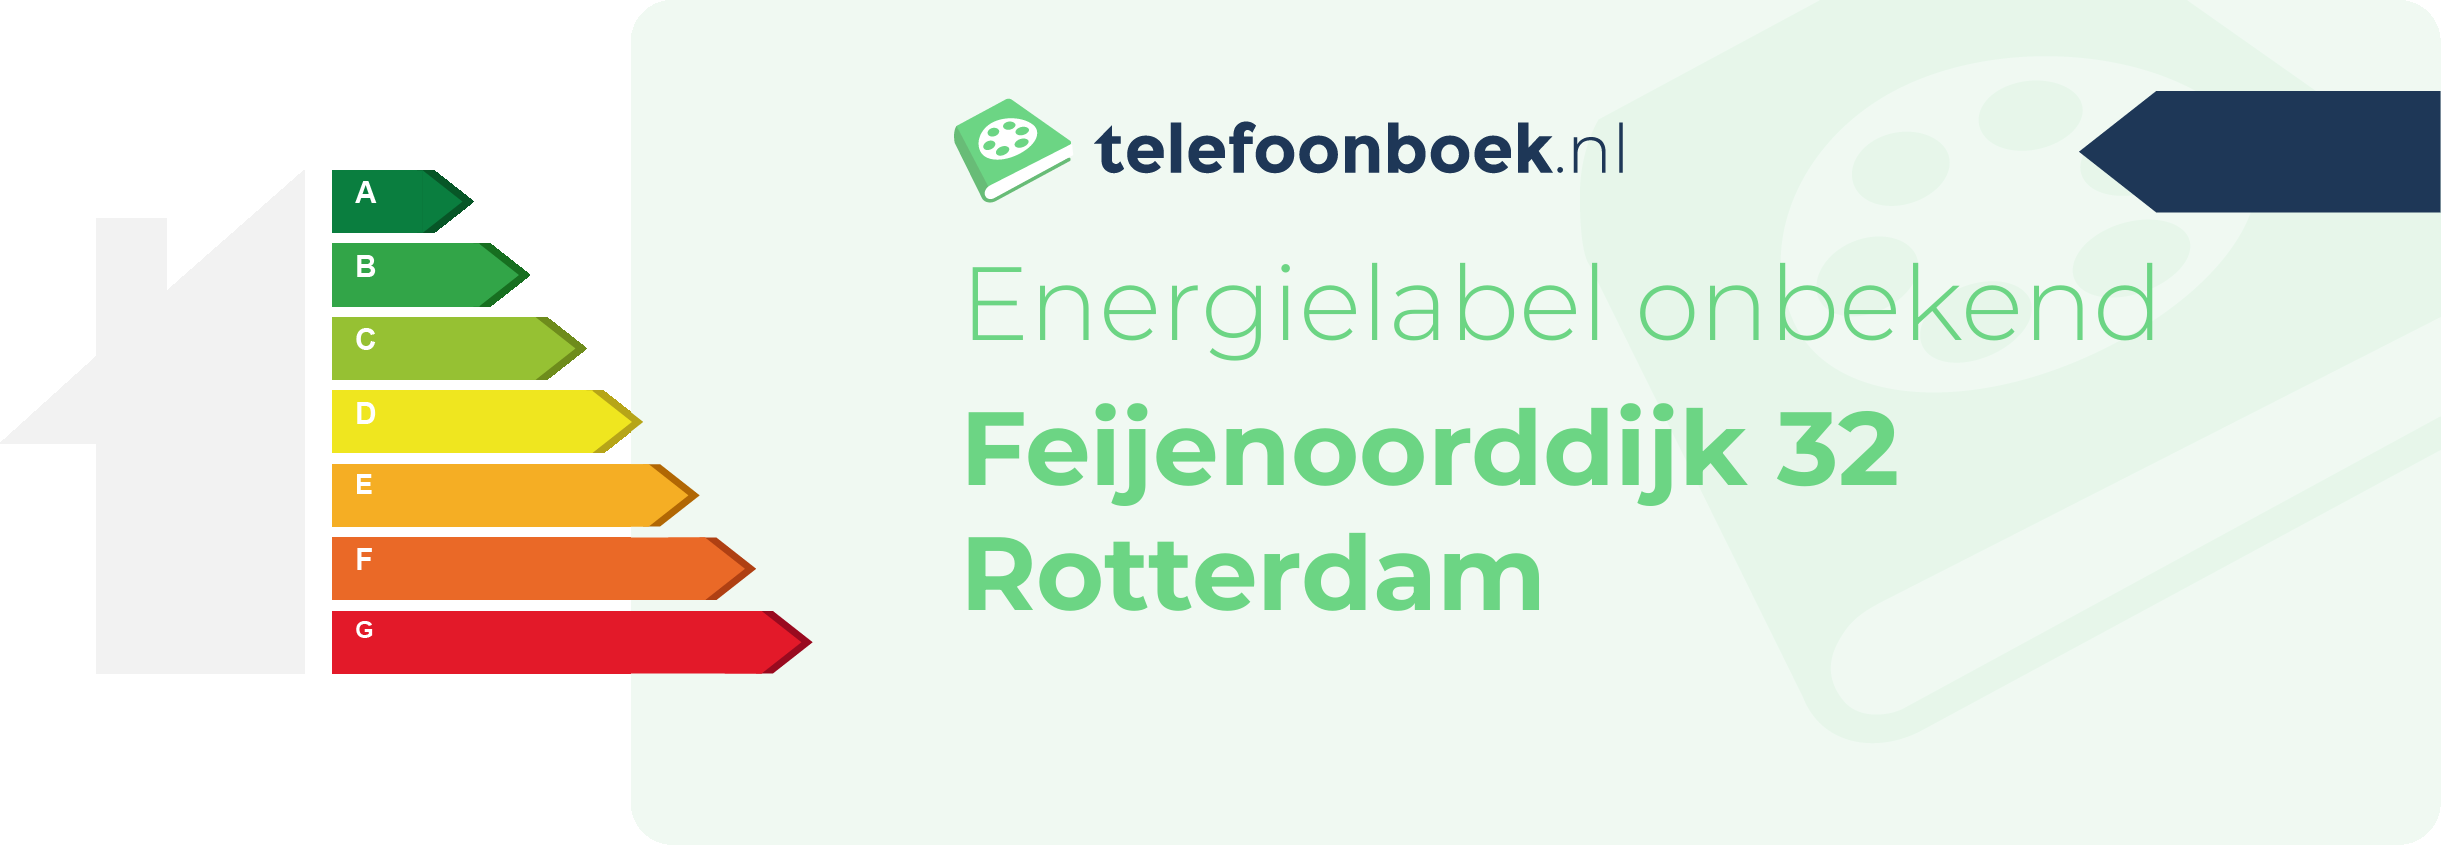 Energielabel Feijenoorddijk 32 Rotterdam